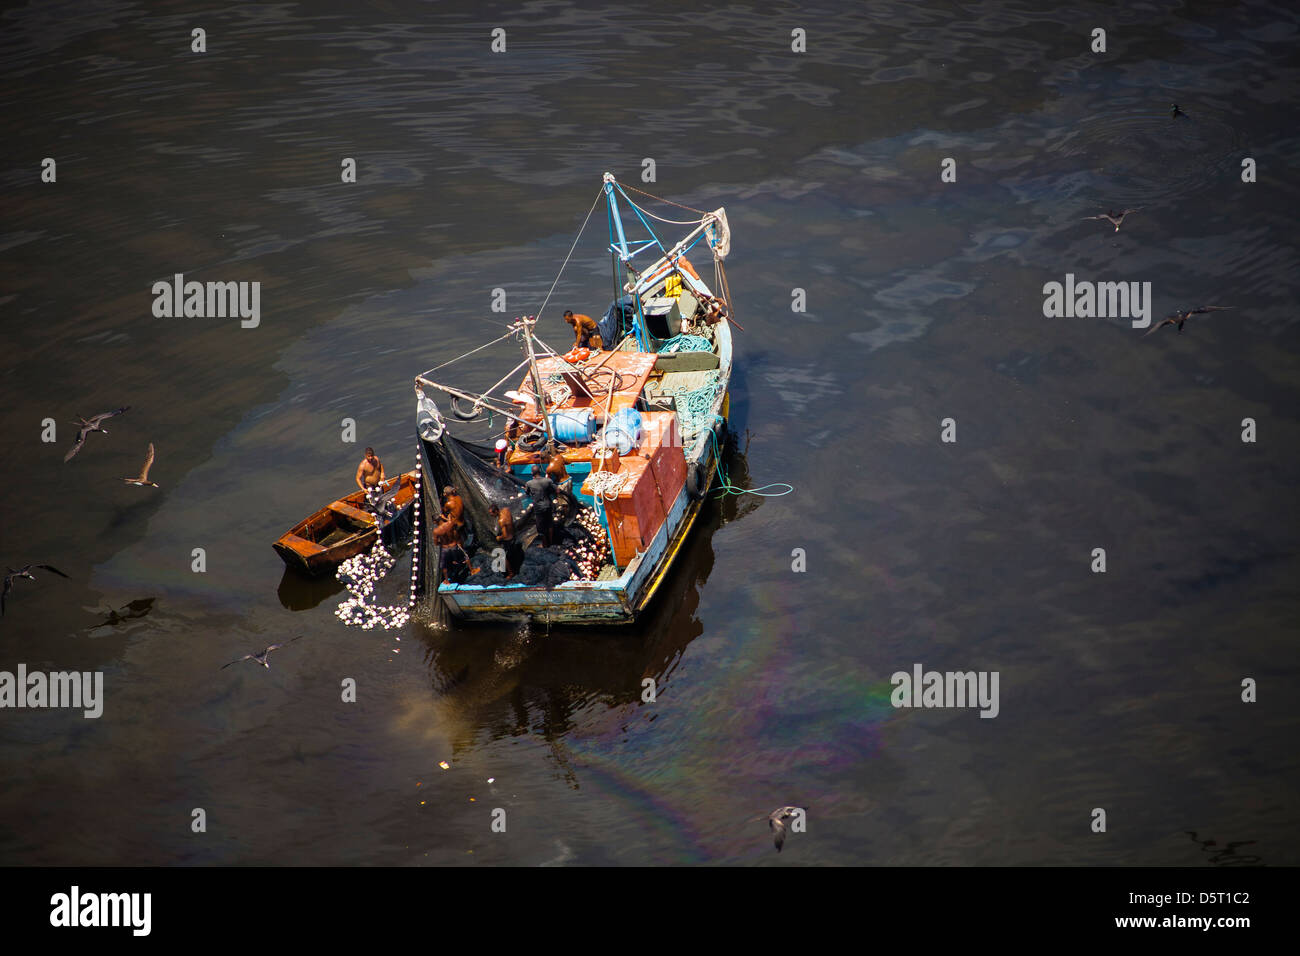 Piccola barca da pesca in acque inquinate della baia di Guanabara, Rio de Janeiro, Brasile. Fuoriuscita di olio nei pressi di Paqueta isola. Foto Stock